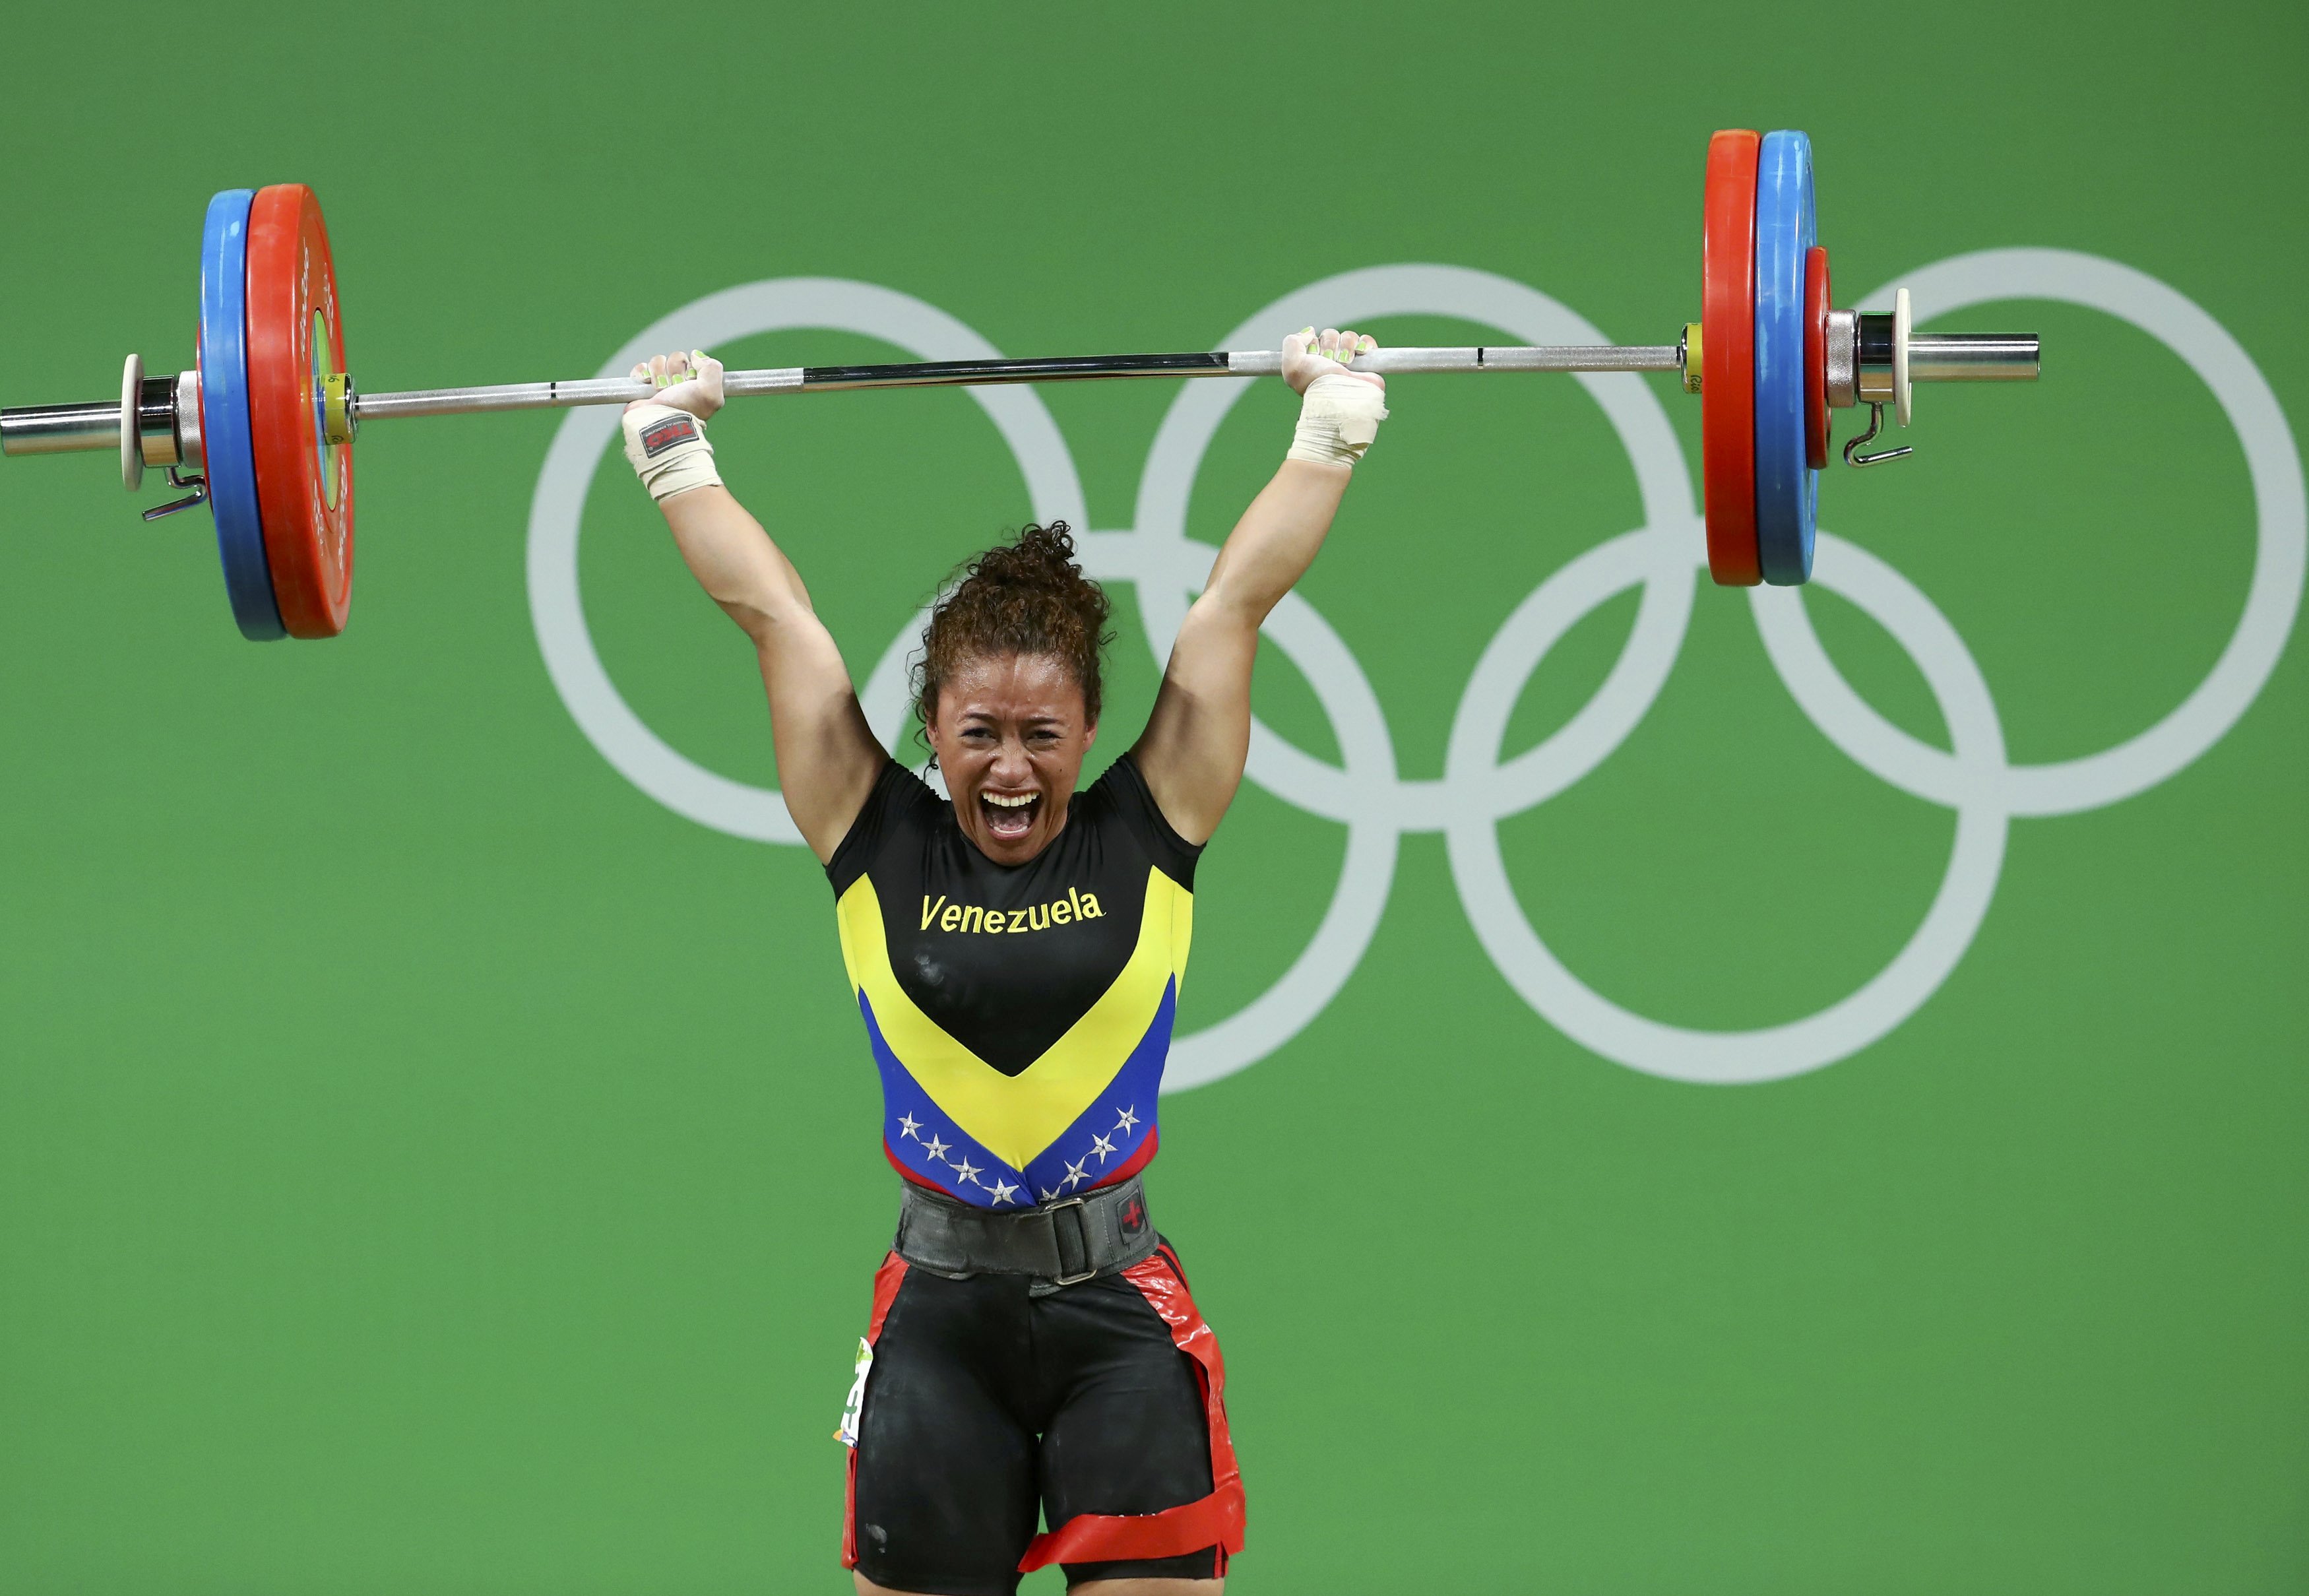 Yusleidy Figueroa culminó novena en los 58 kg del levantamiento de pesas #Rio2016